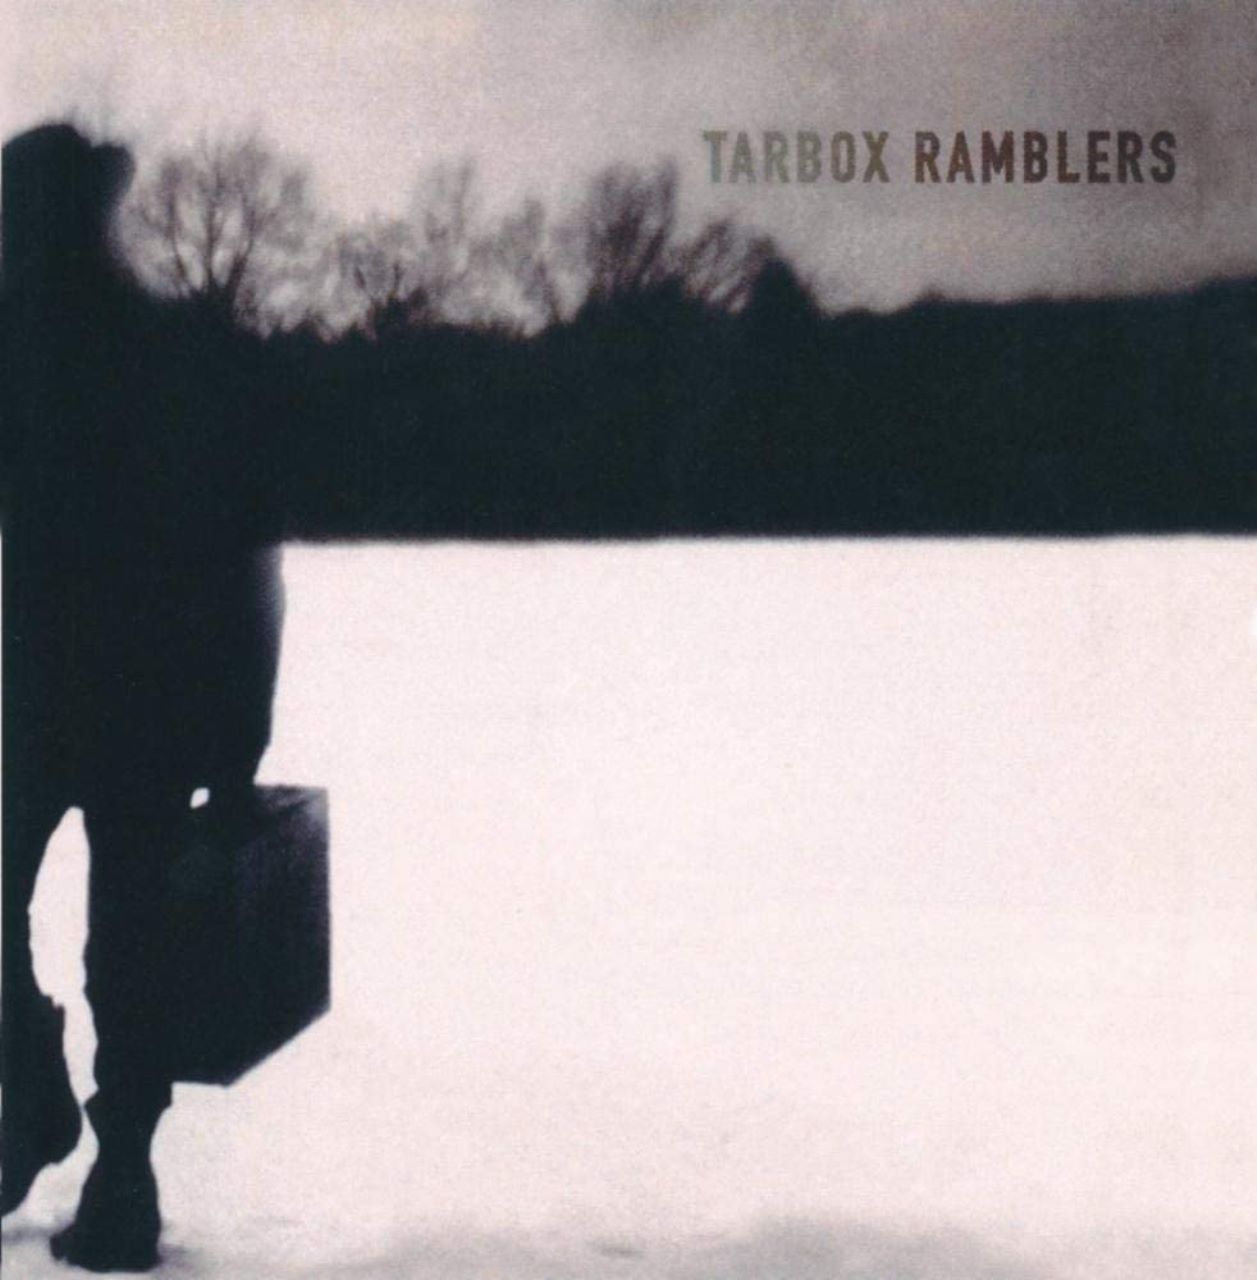 Tarbox Ramblers – Tarbox Ramblers cover album